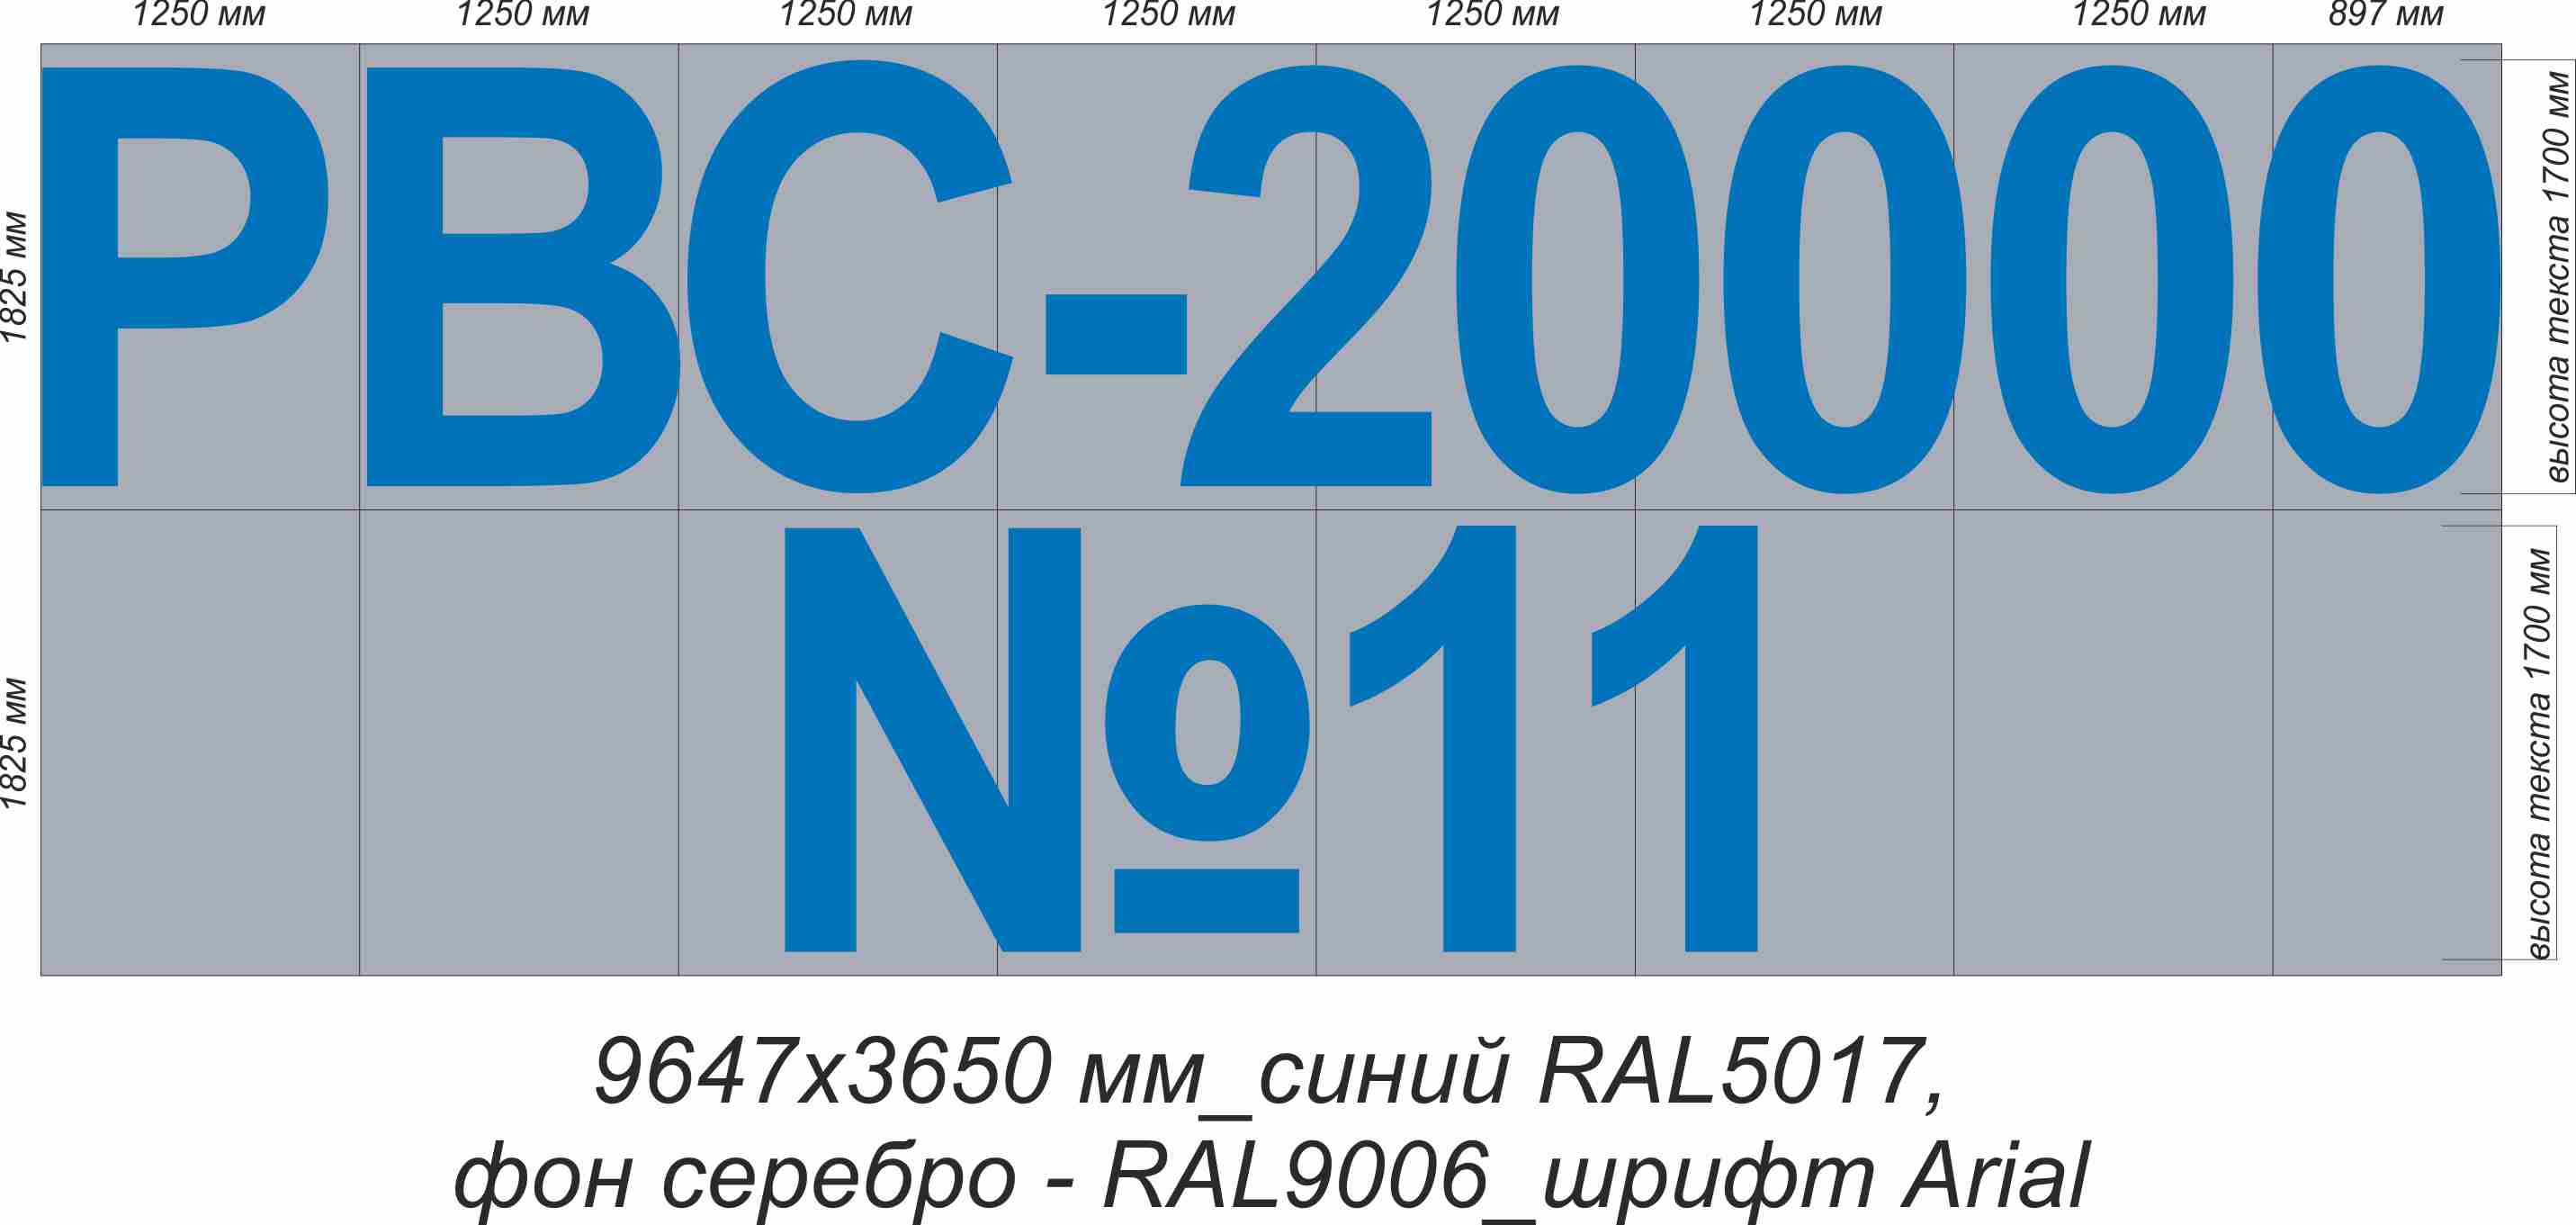 Логотип на резервуар "РВС-20000 №11"  